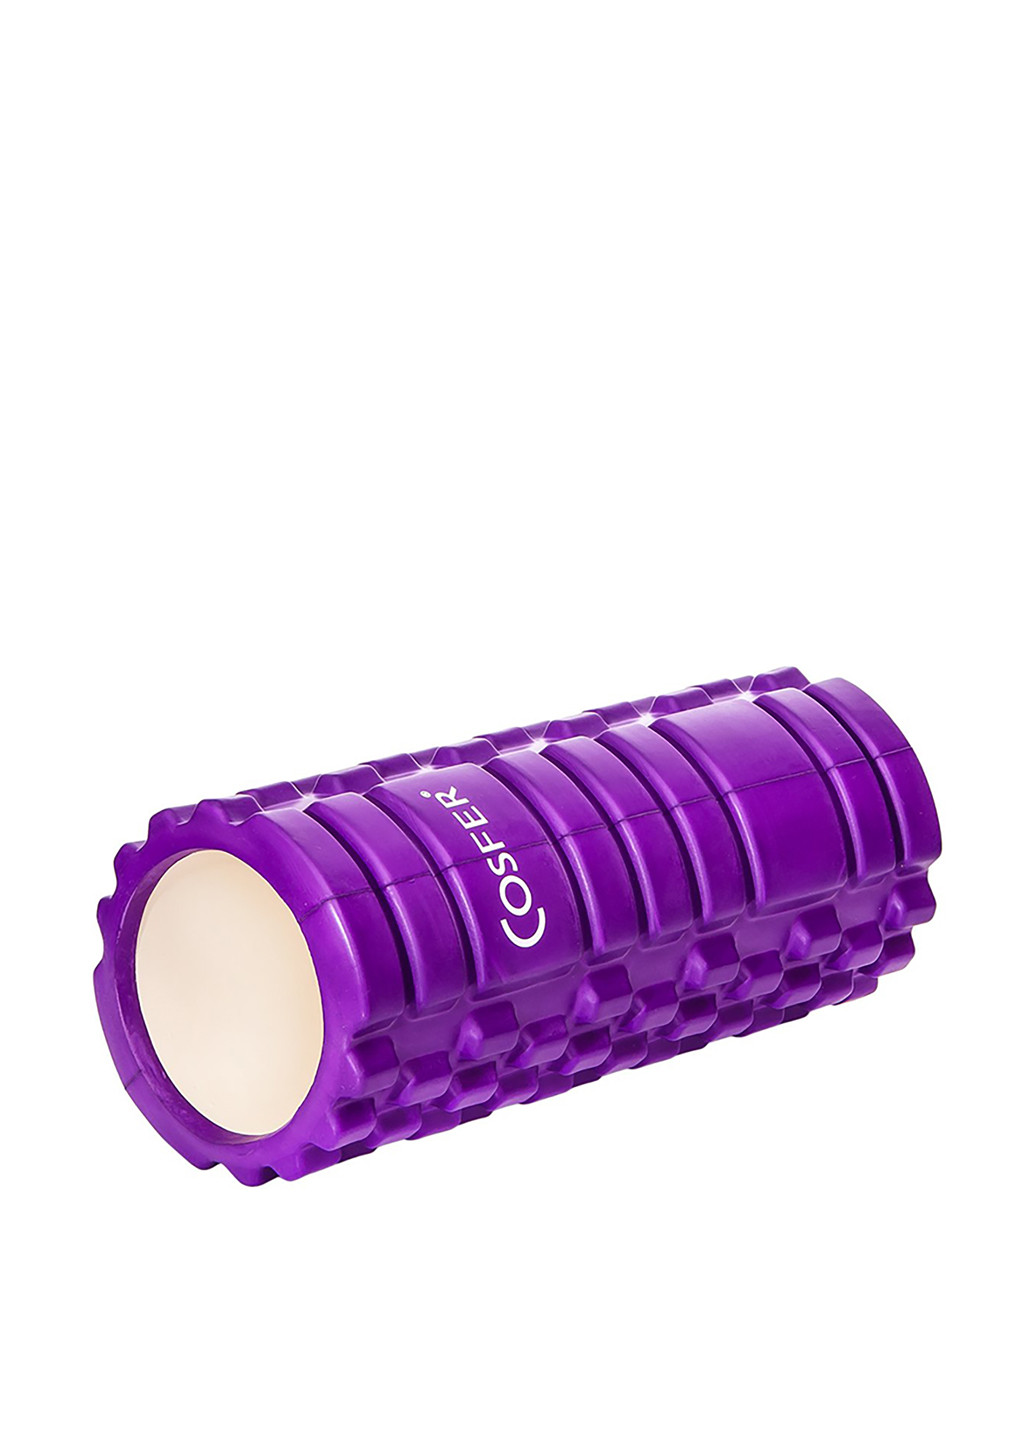 Ролик для йоги, 33х14 см Cosfer логотип фиолетовый